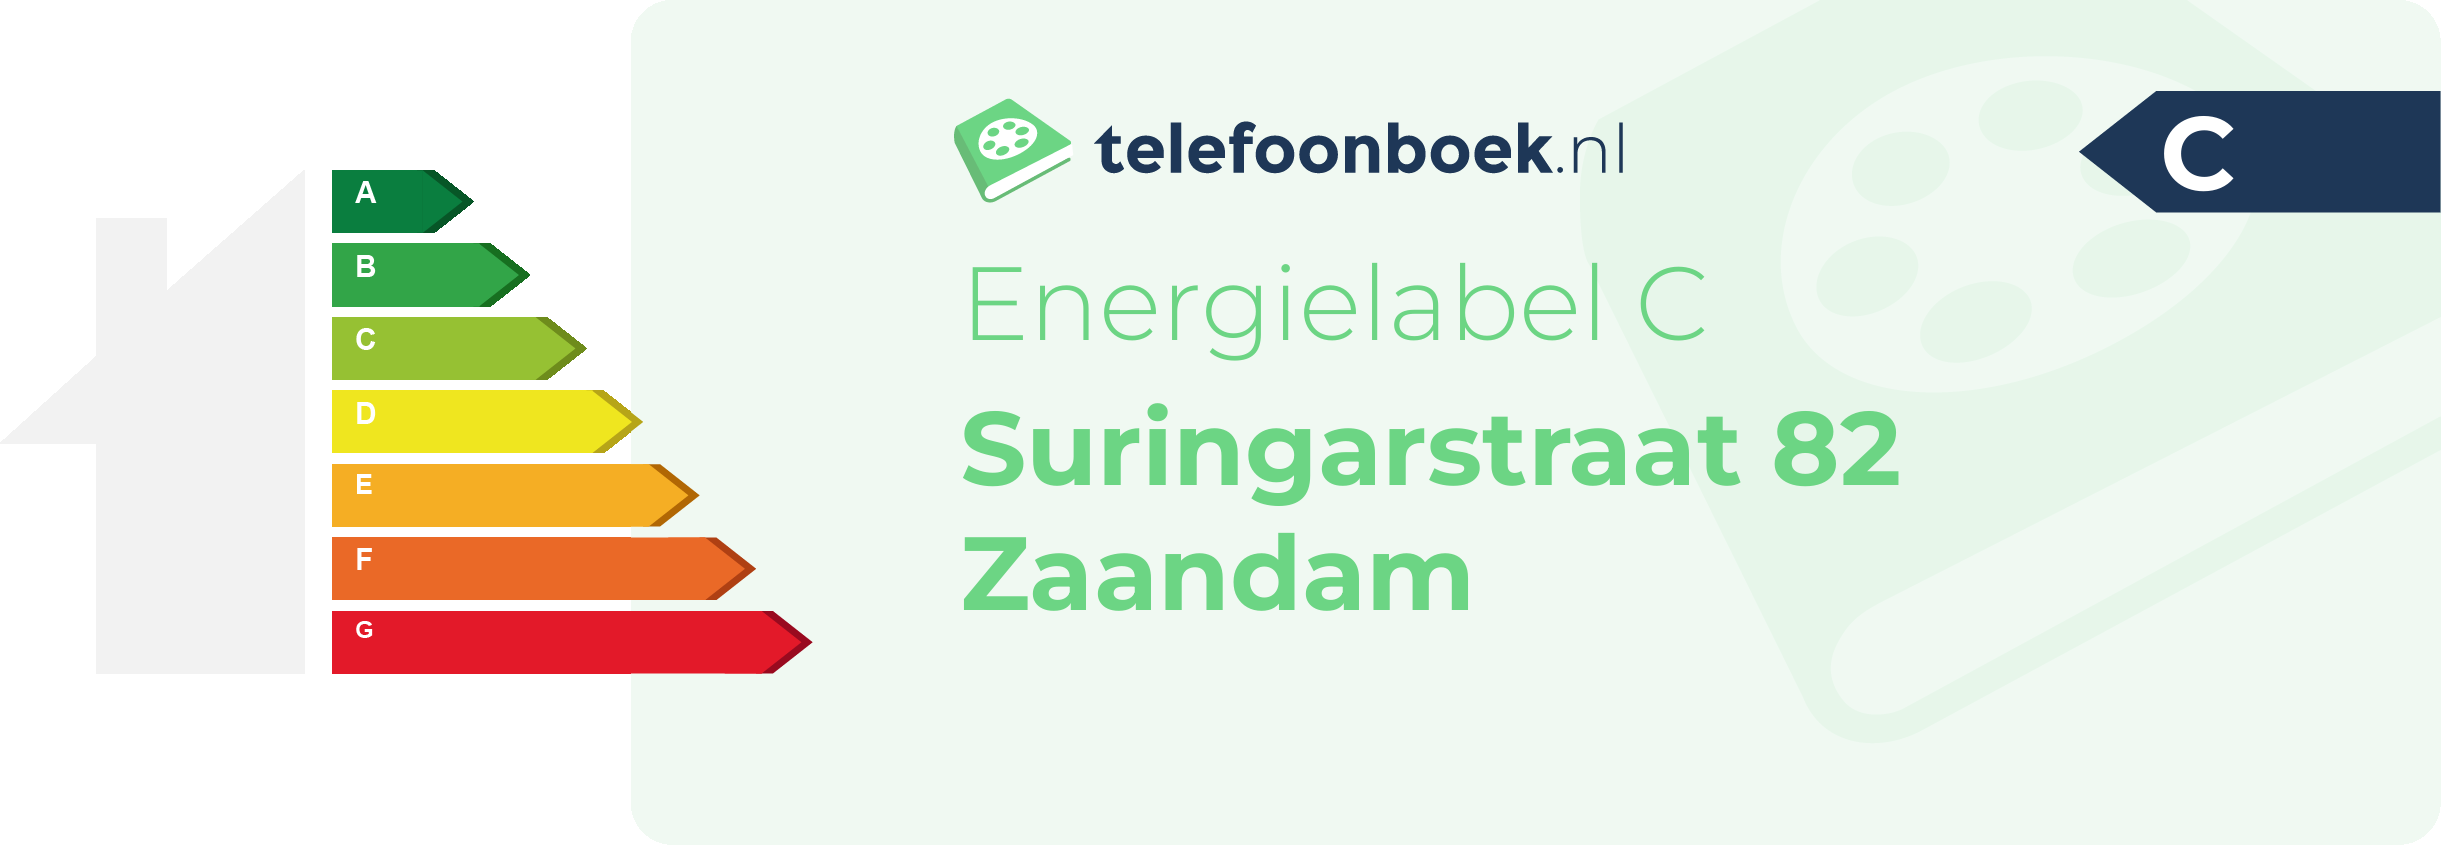 Energielabel Suringarstraat 82 Zaandam